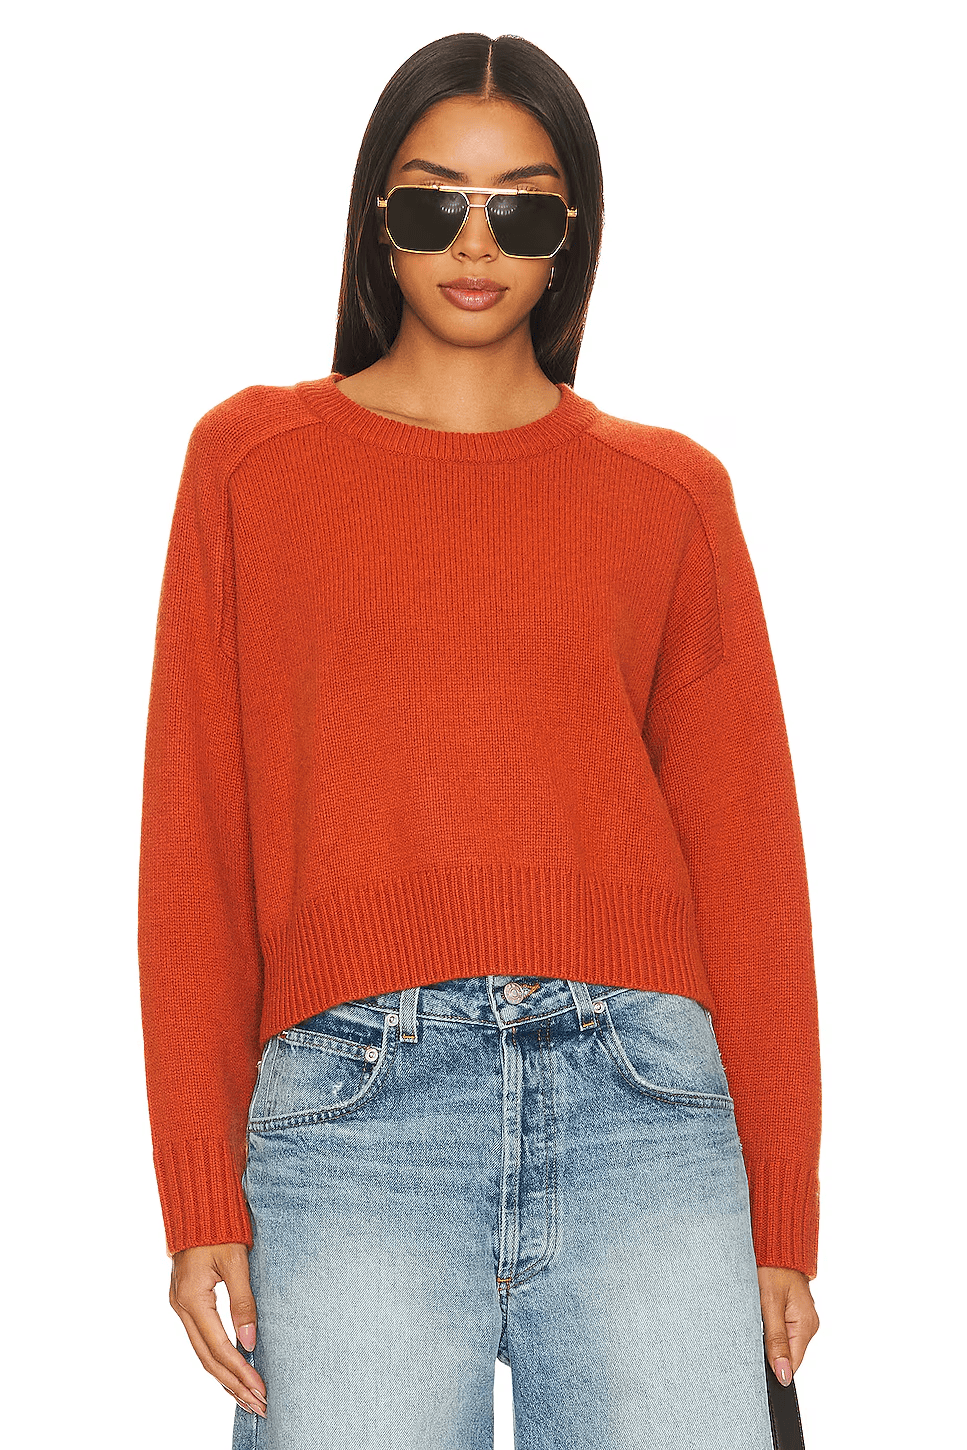 Deep Orange Sweater | Warm Color Palette Clothes